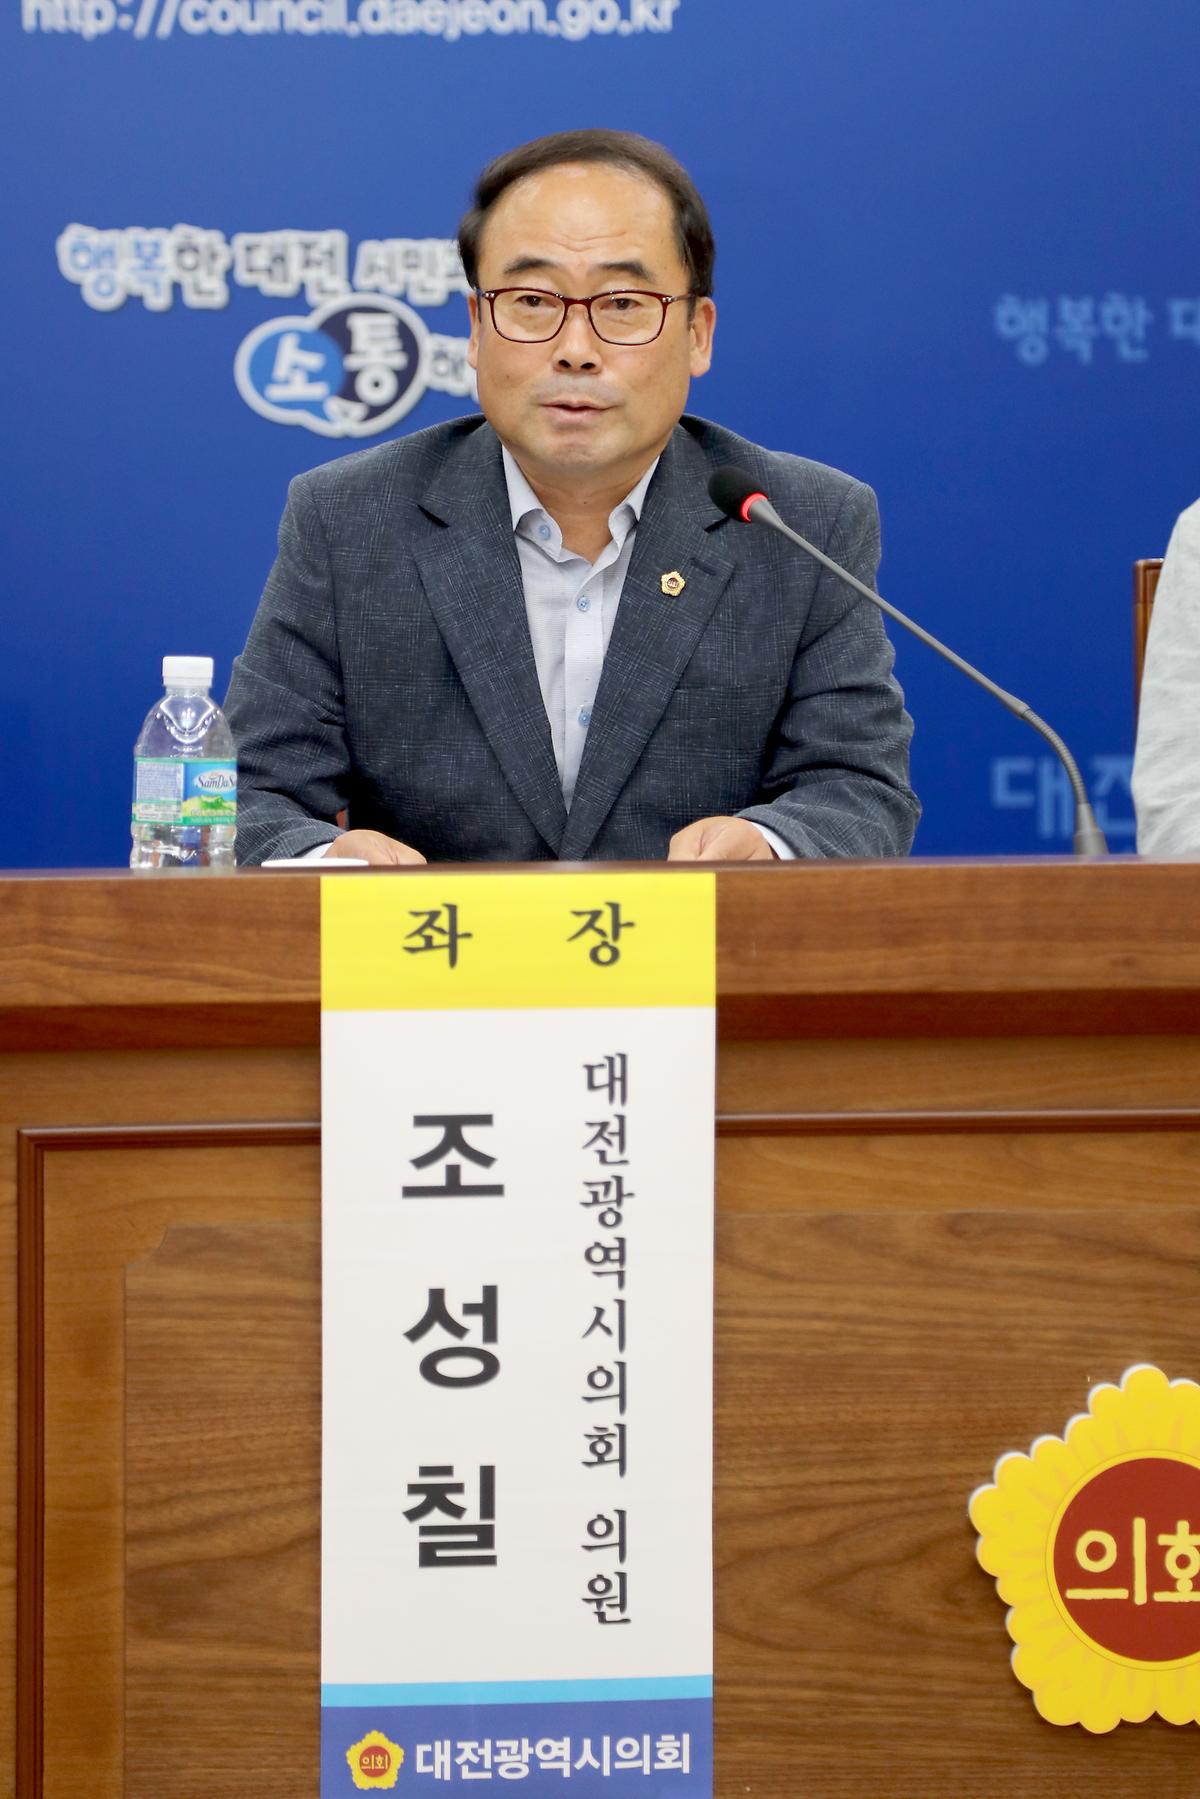 조성칠 의원, '대전학 활성화 방안 정책토론회' 개최 [ 2019-09-09 ]